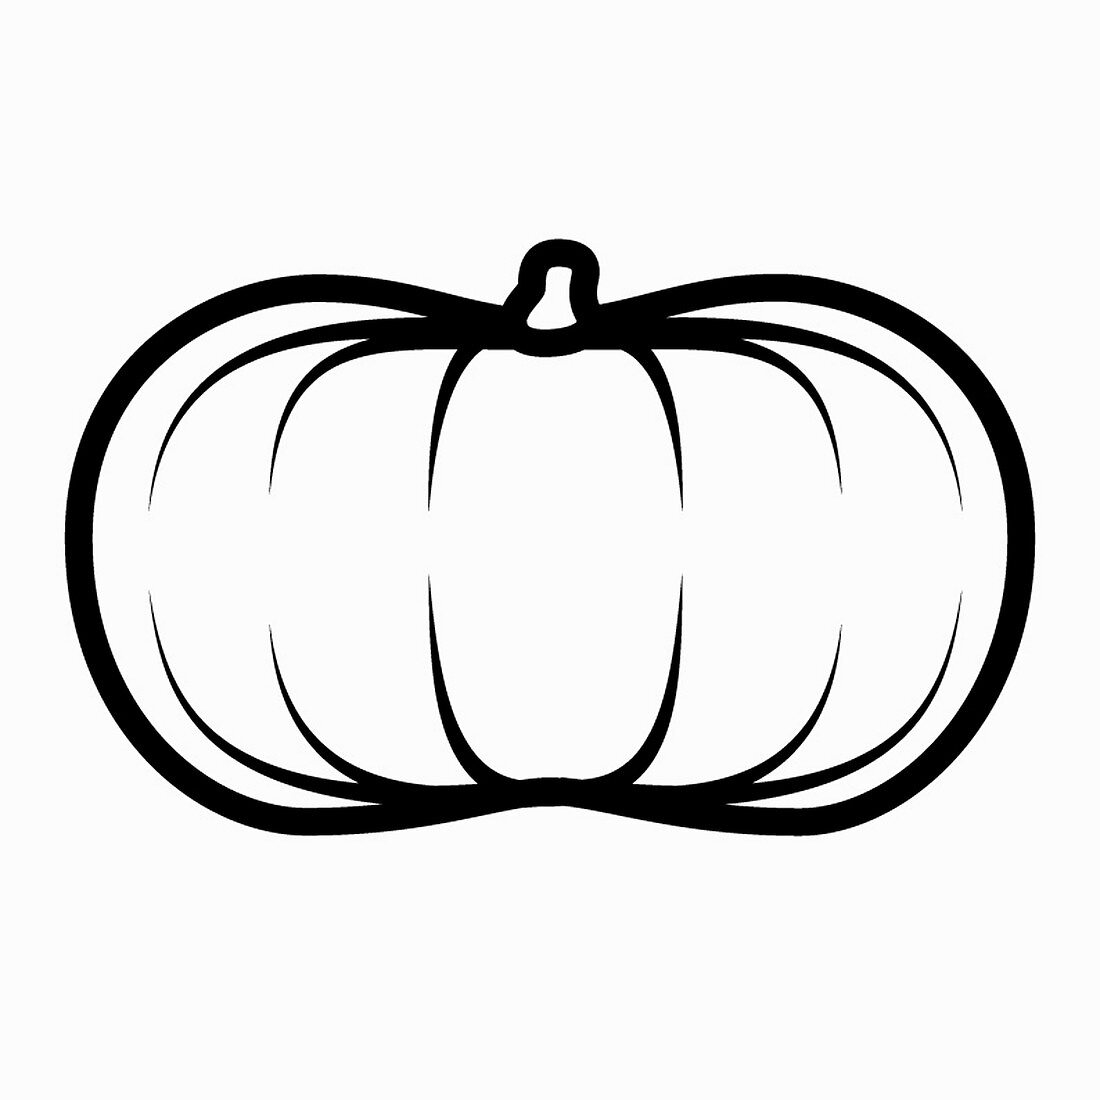 Musque de Provence pumpkin, black-and-white illustration